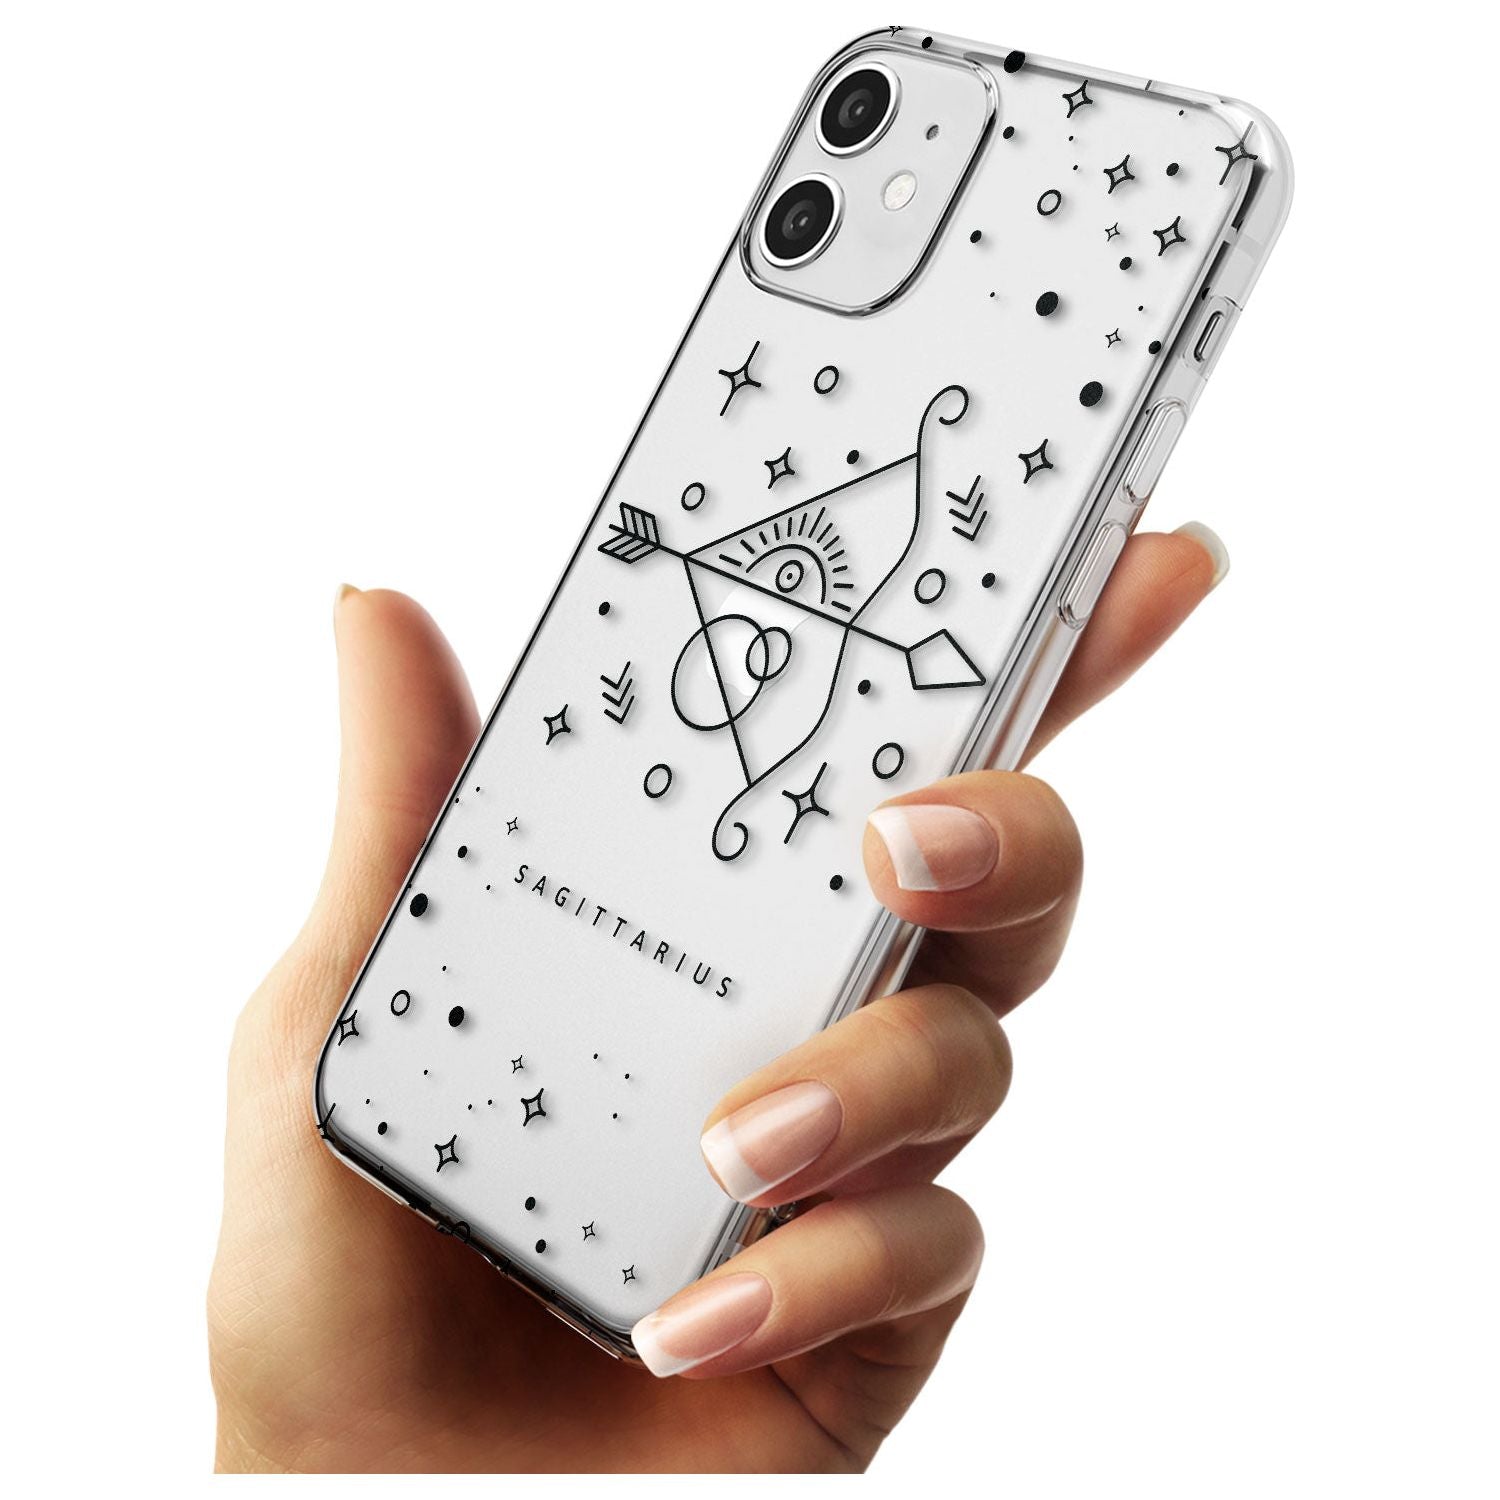 Sagittarius Emblem - Transparent Design Slim TPU Phone Case for iPhone 11